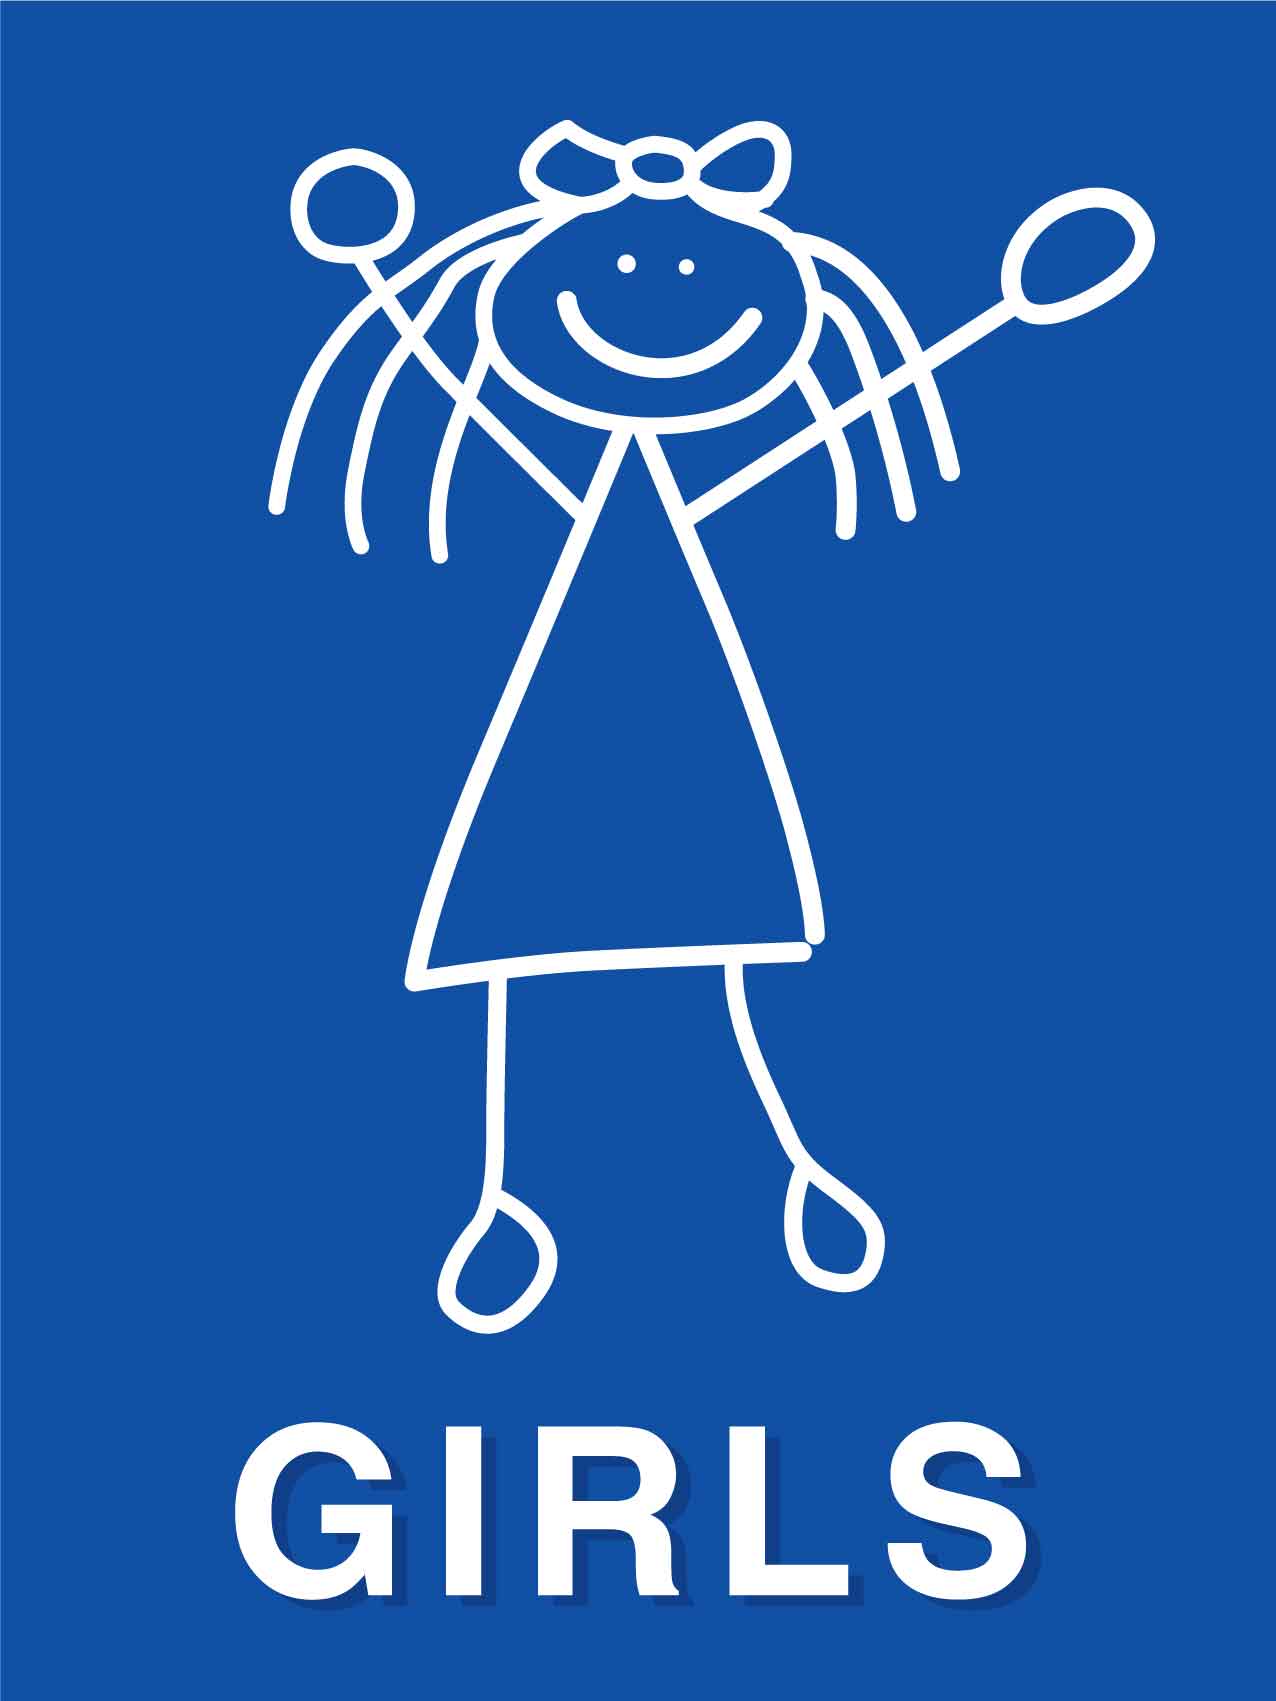 Girls Restrooms Sign